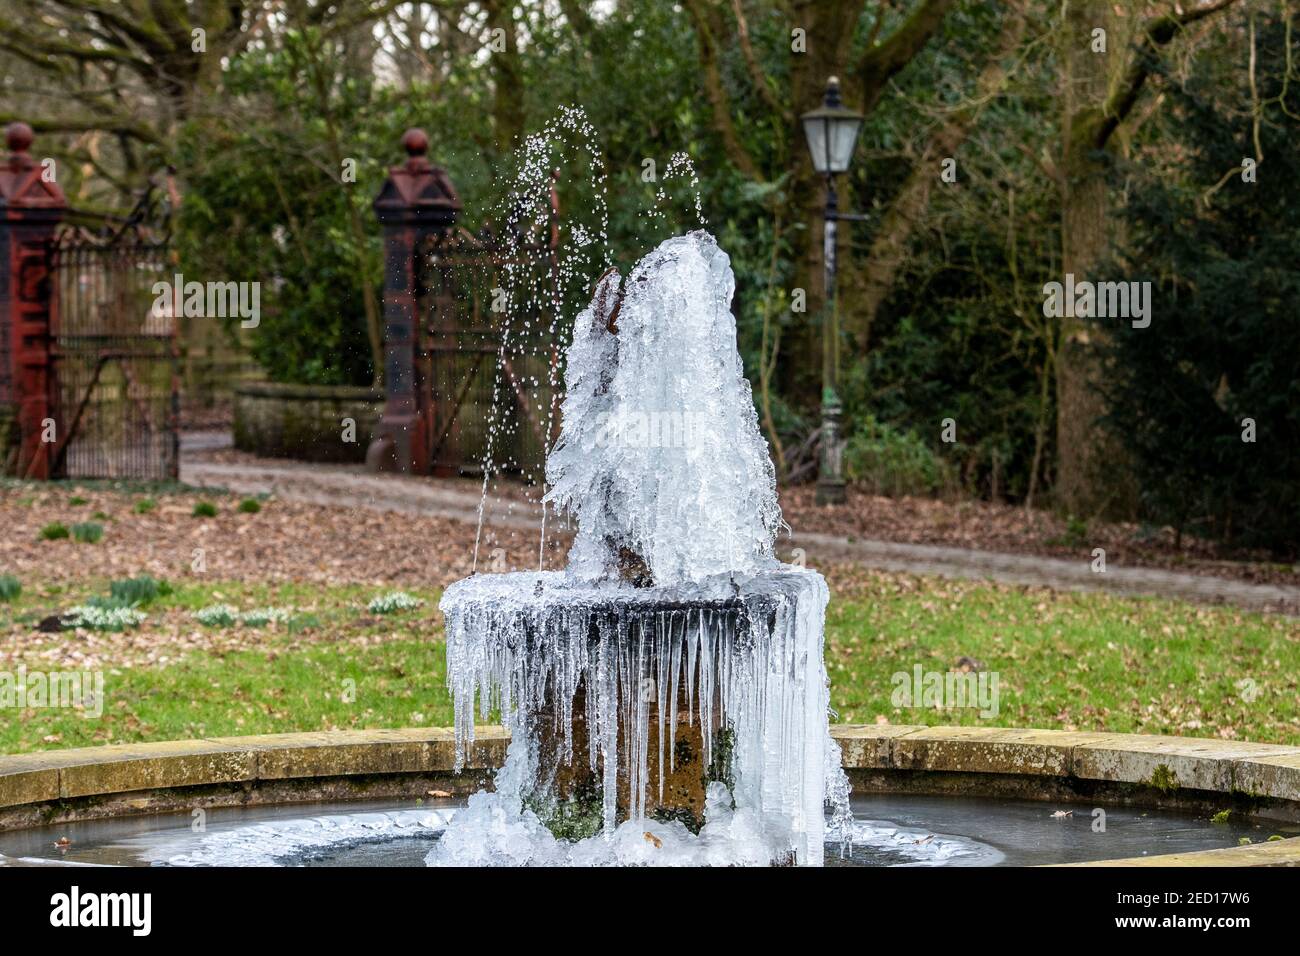 Der Frozen Angel Gartenwasser verfügen über Lancashire UK als eiskalt Die Temperaturen im Nordwesten Englands erreichten Rekordwerte Unter Freeziing Februar Stockfoto